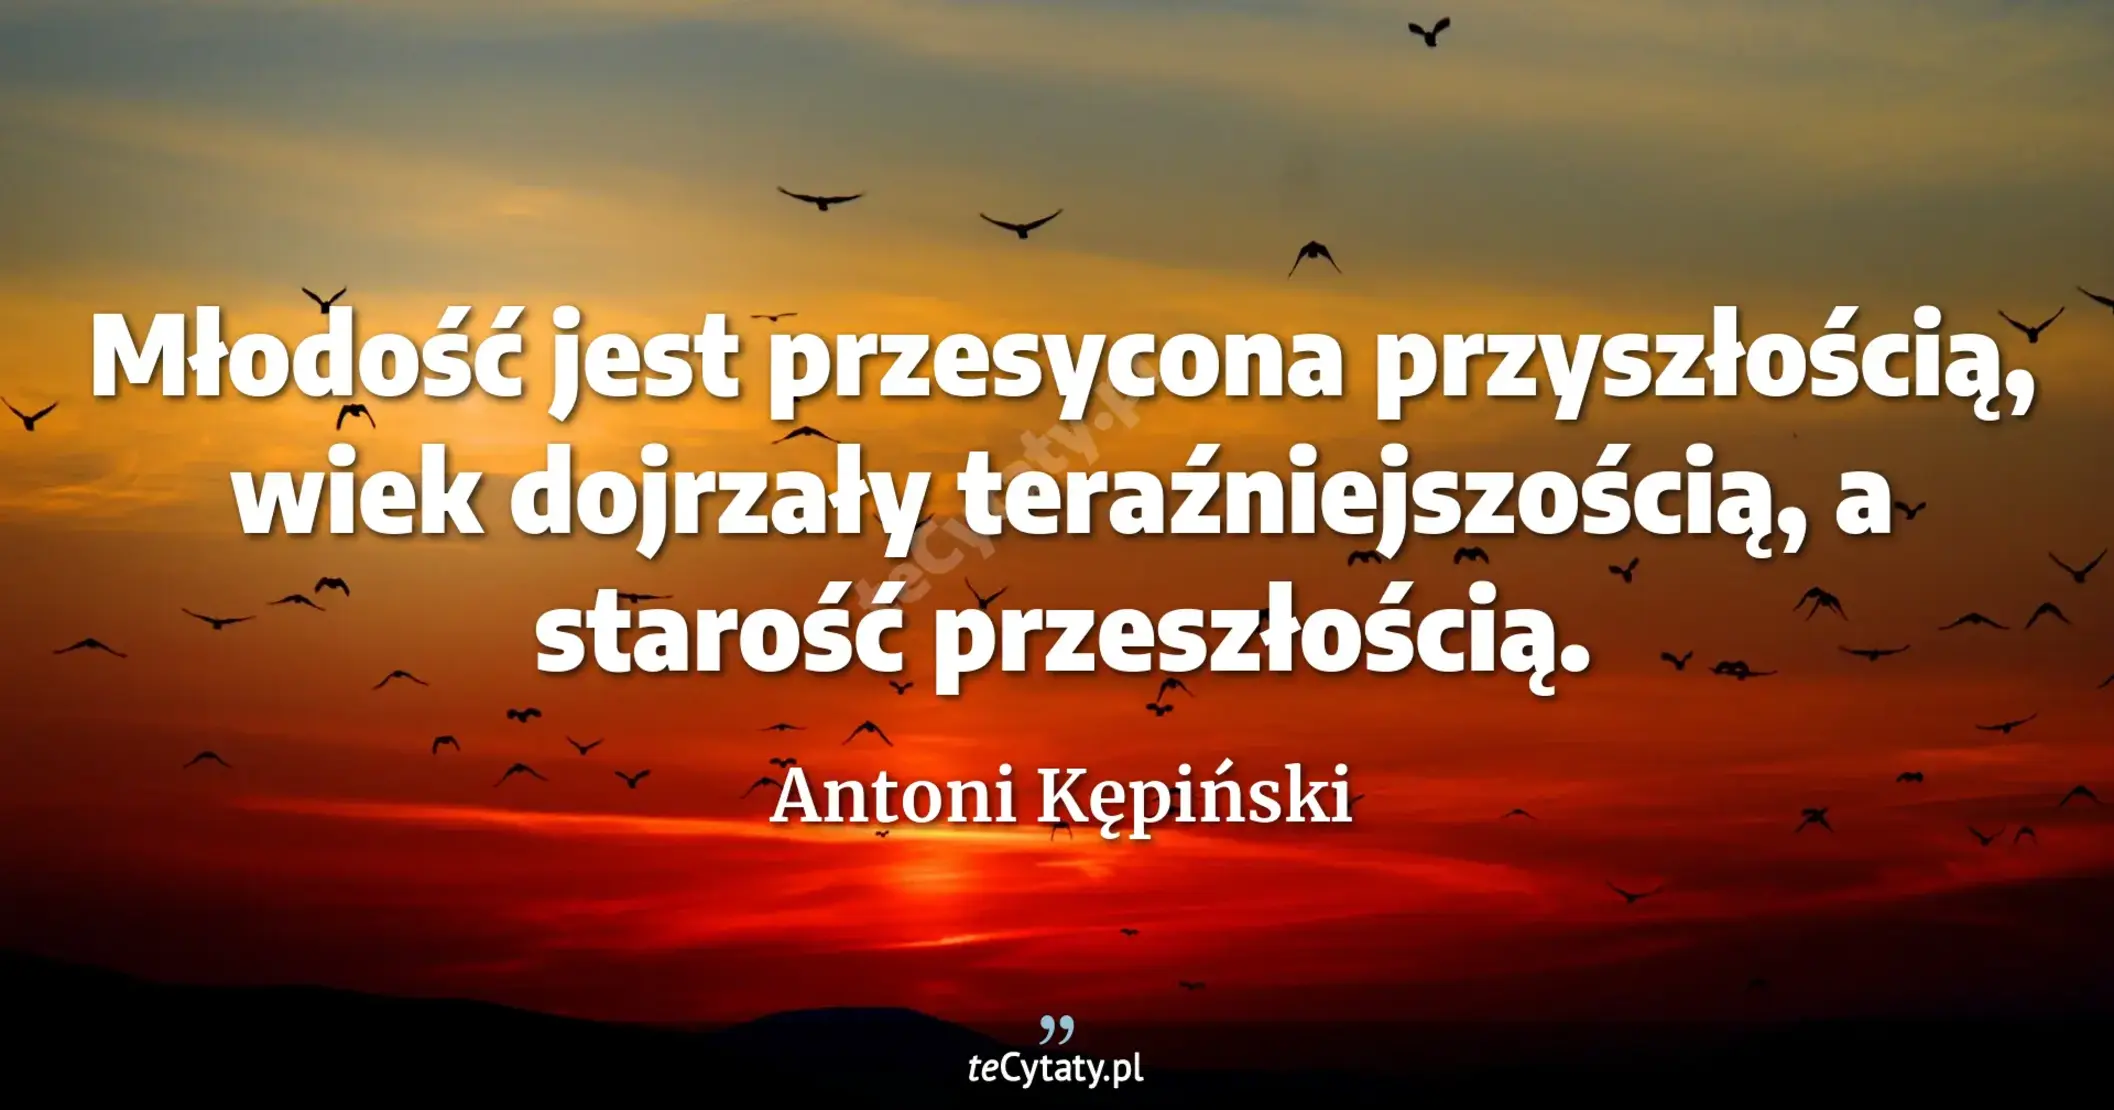 Młodość jest przesycona przyszłością, wiek dojrzały teraźniejszością, a starość przeszłością. - Antoni Kępiński